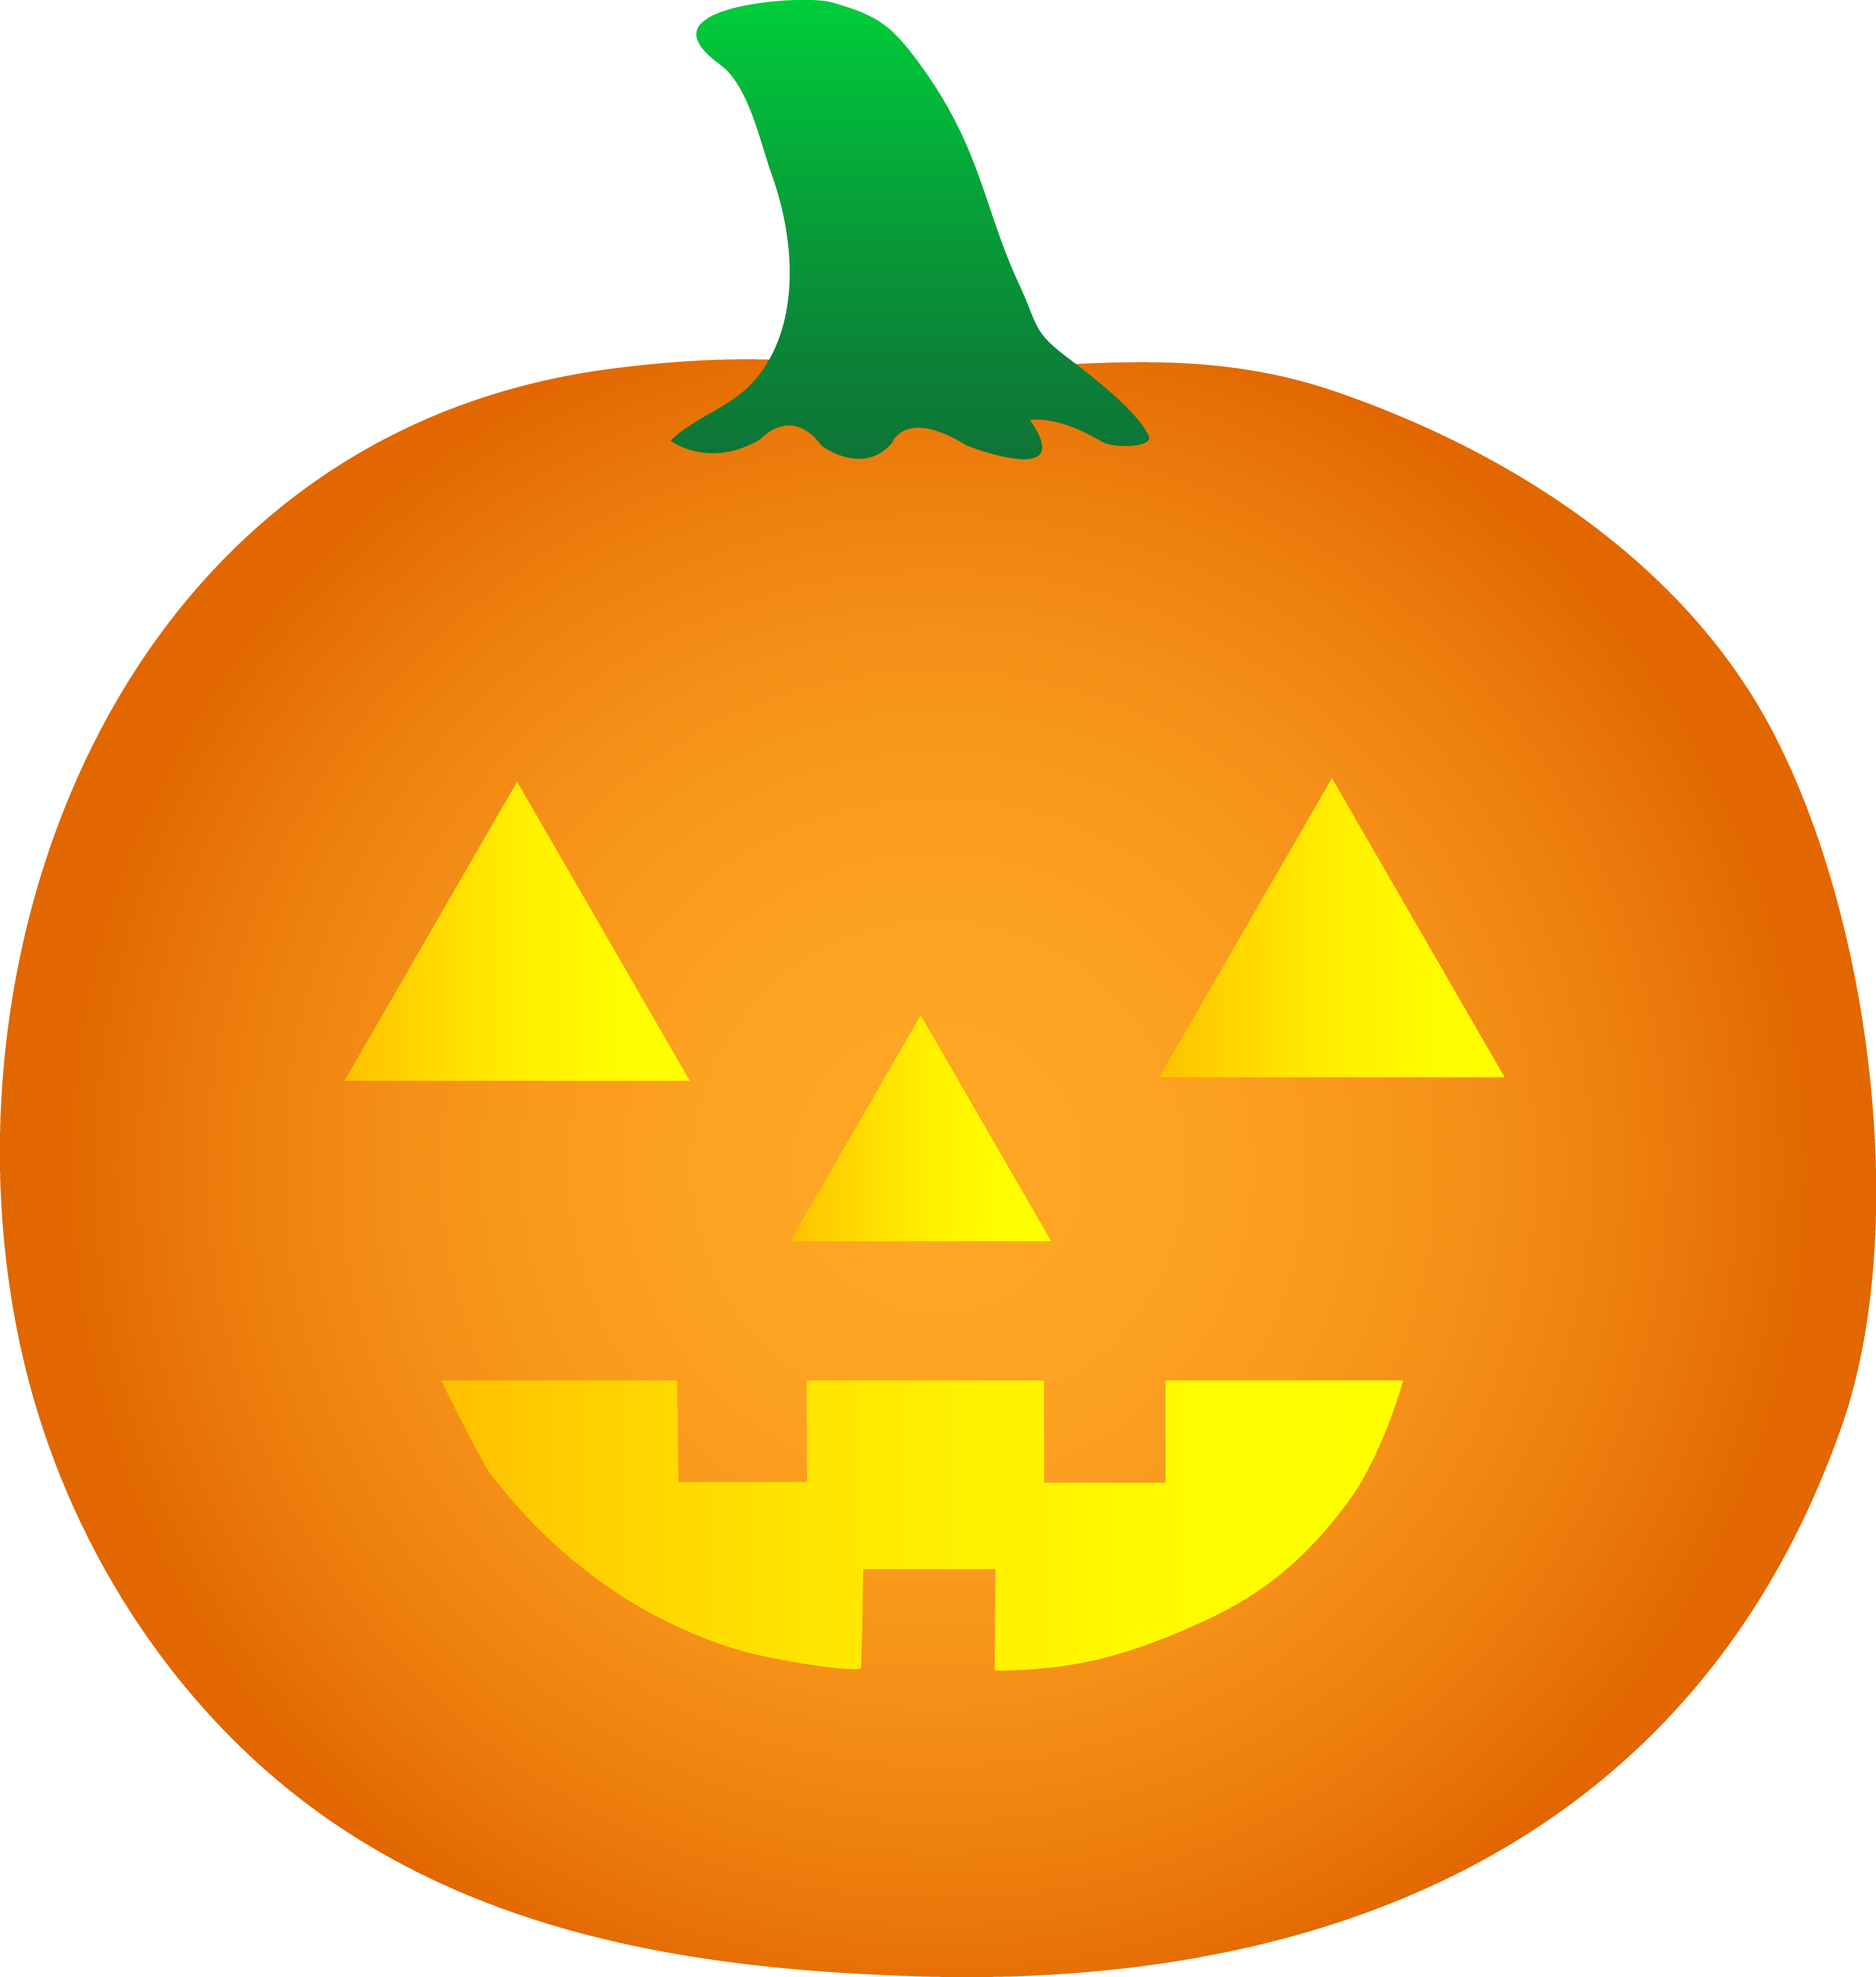 Cartoon Halloween Pumpkin - ClipArt Best